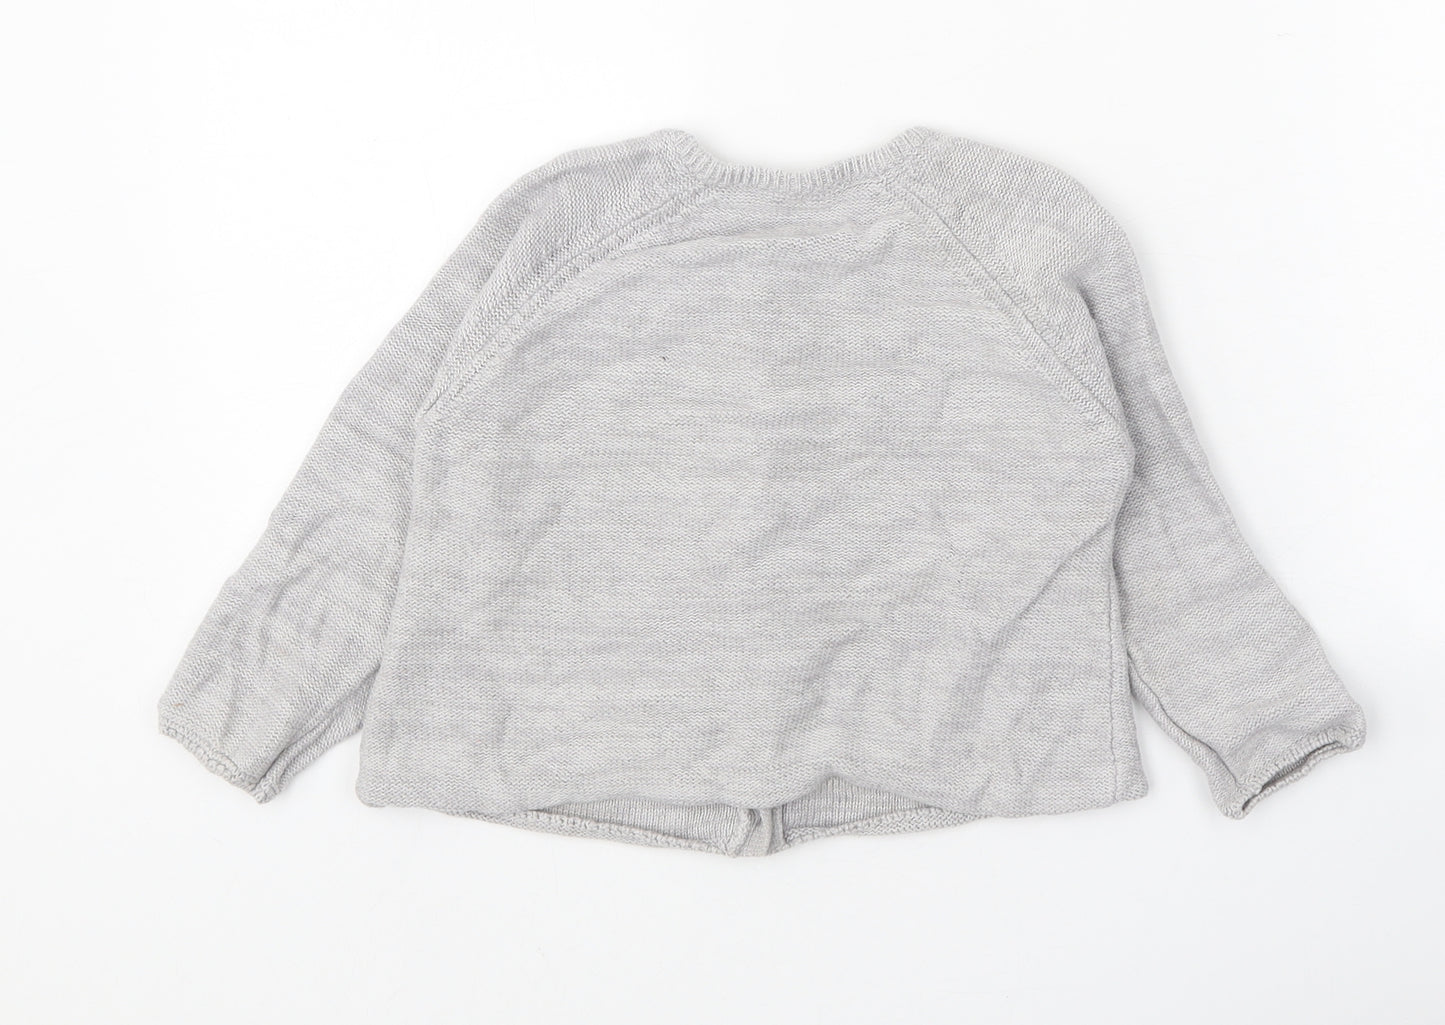 Little Kids Girls Grey Round Neck 100% Cotton Cardigan Jumper Size 3-4 Years Button - Dog Detail